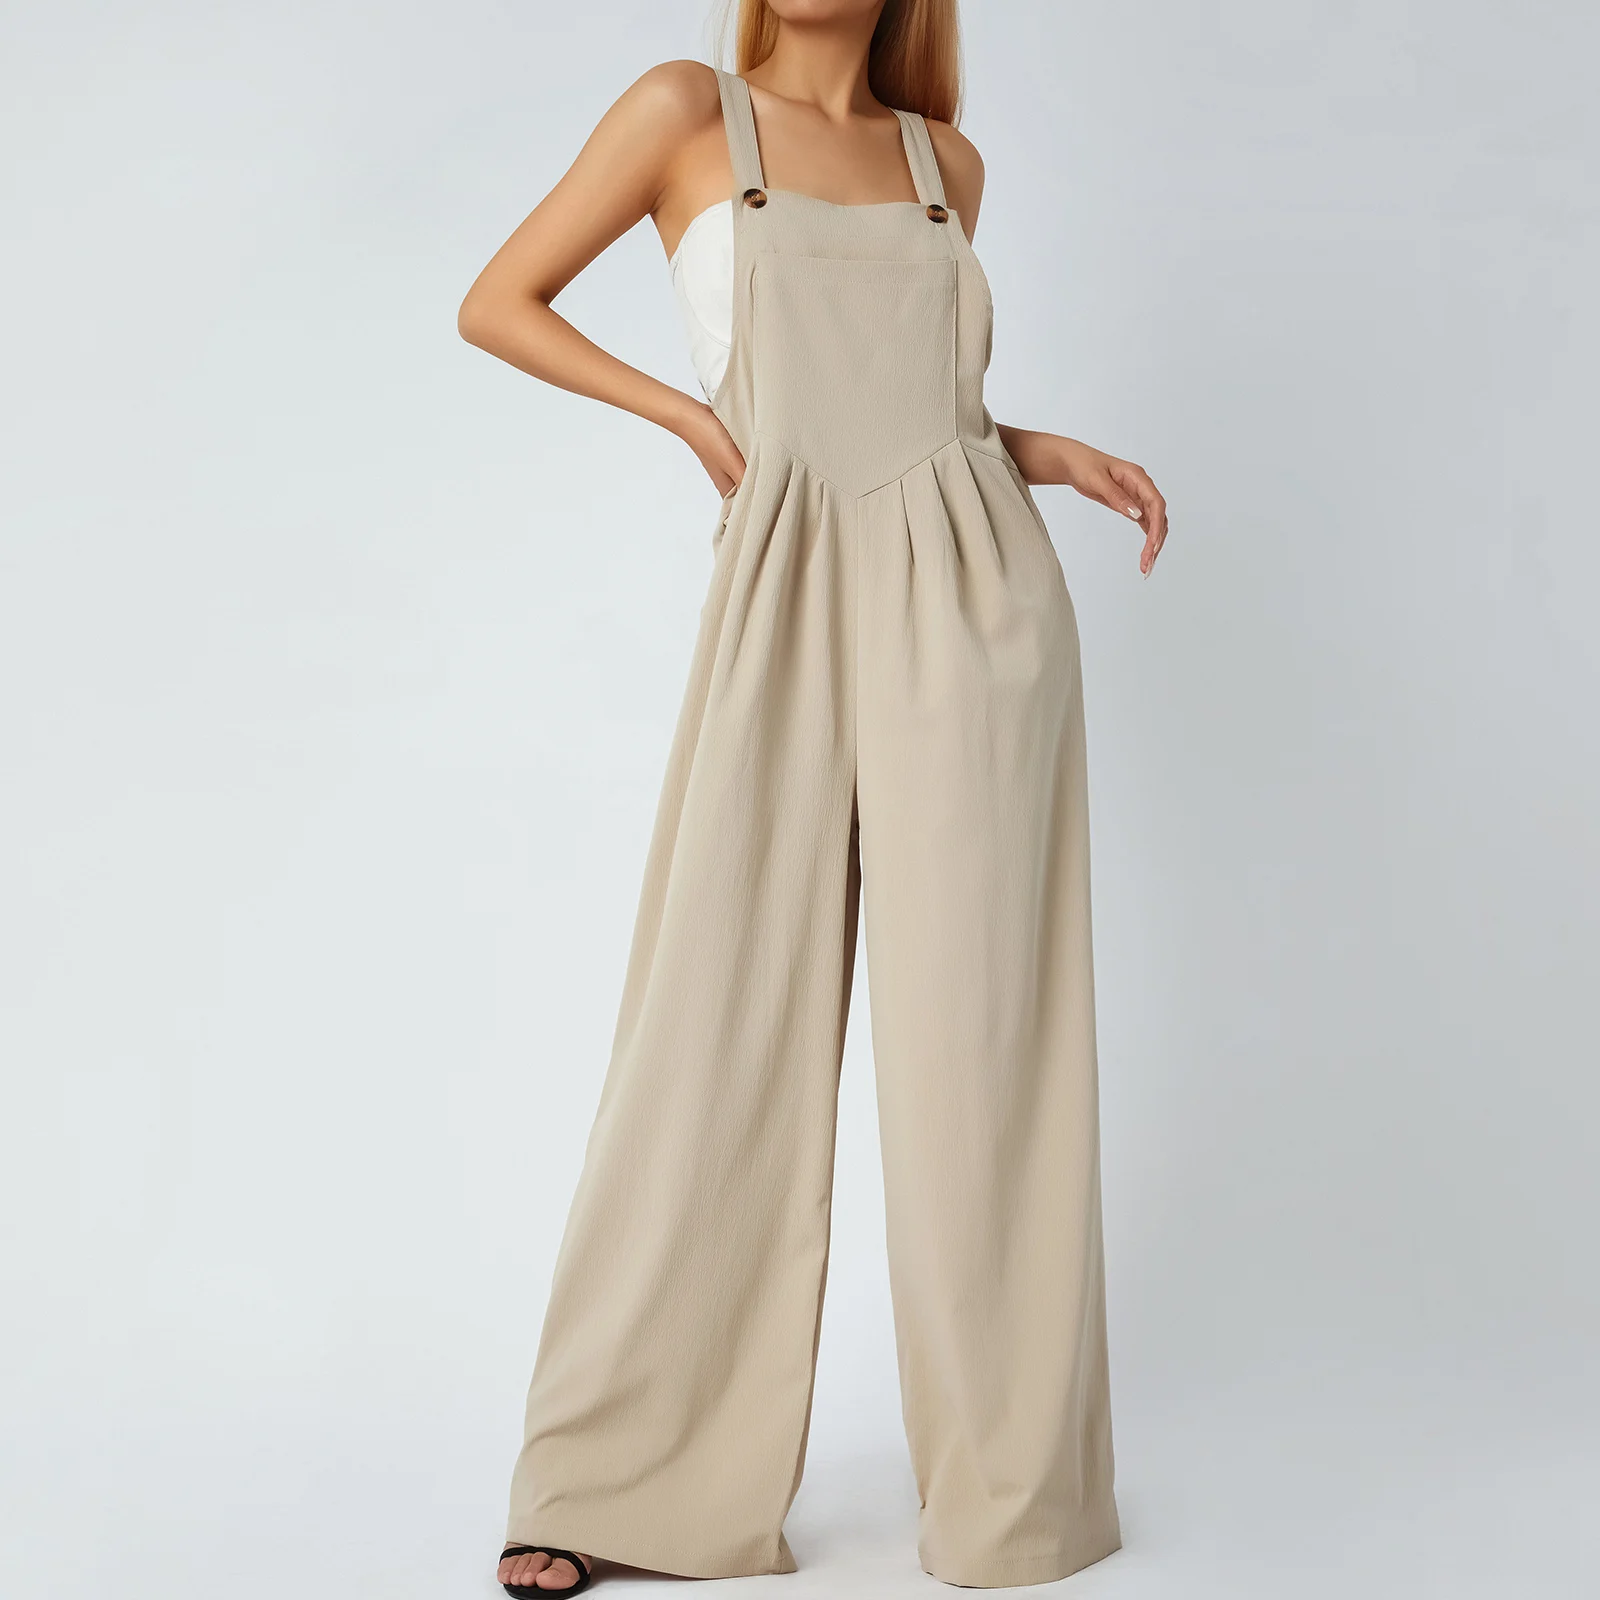 Kadın Yaz Rahat Düğmeler Geniş Bacak Askı Tulum Cepler ile Moda Düz Renk Tulumlar Streetwear Kadın Pantolon Görüntü 1